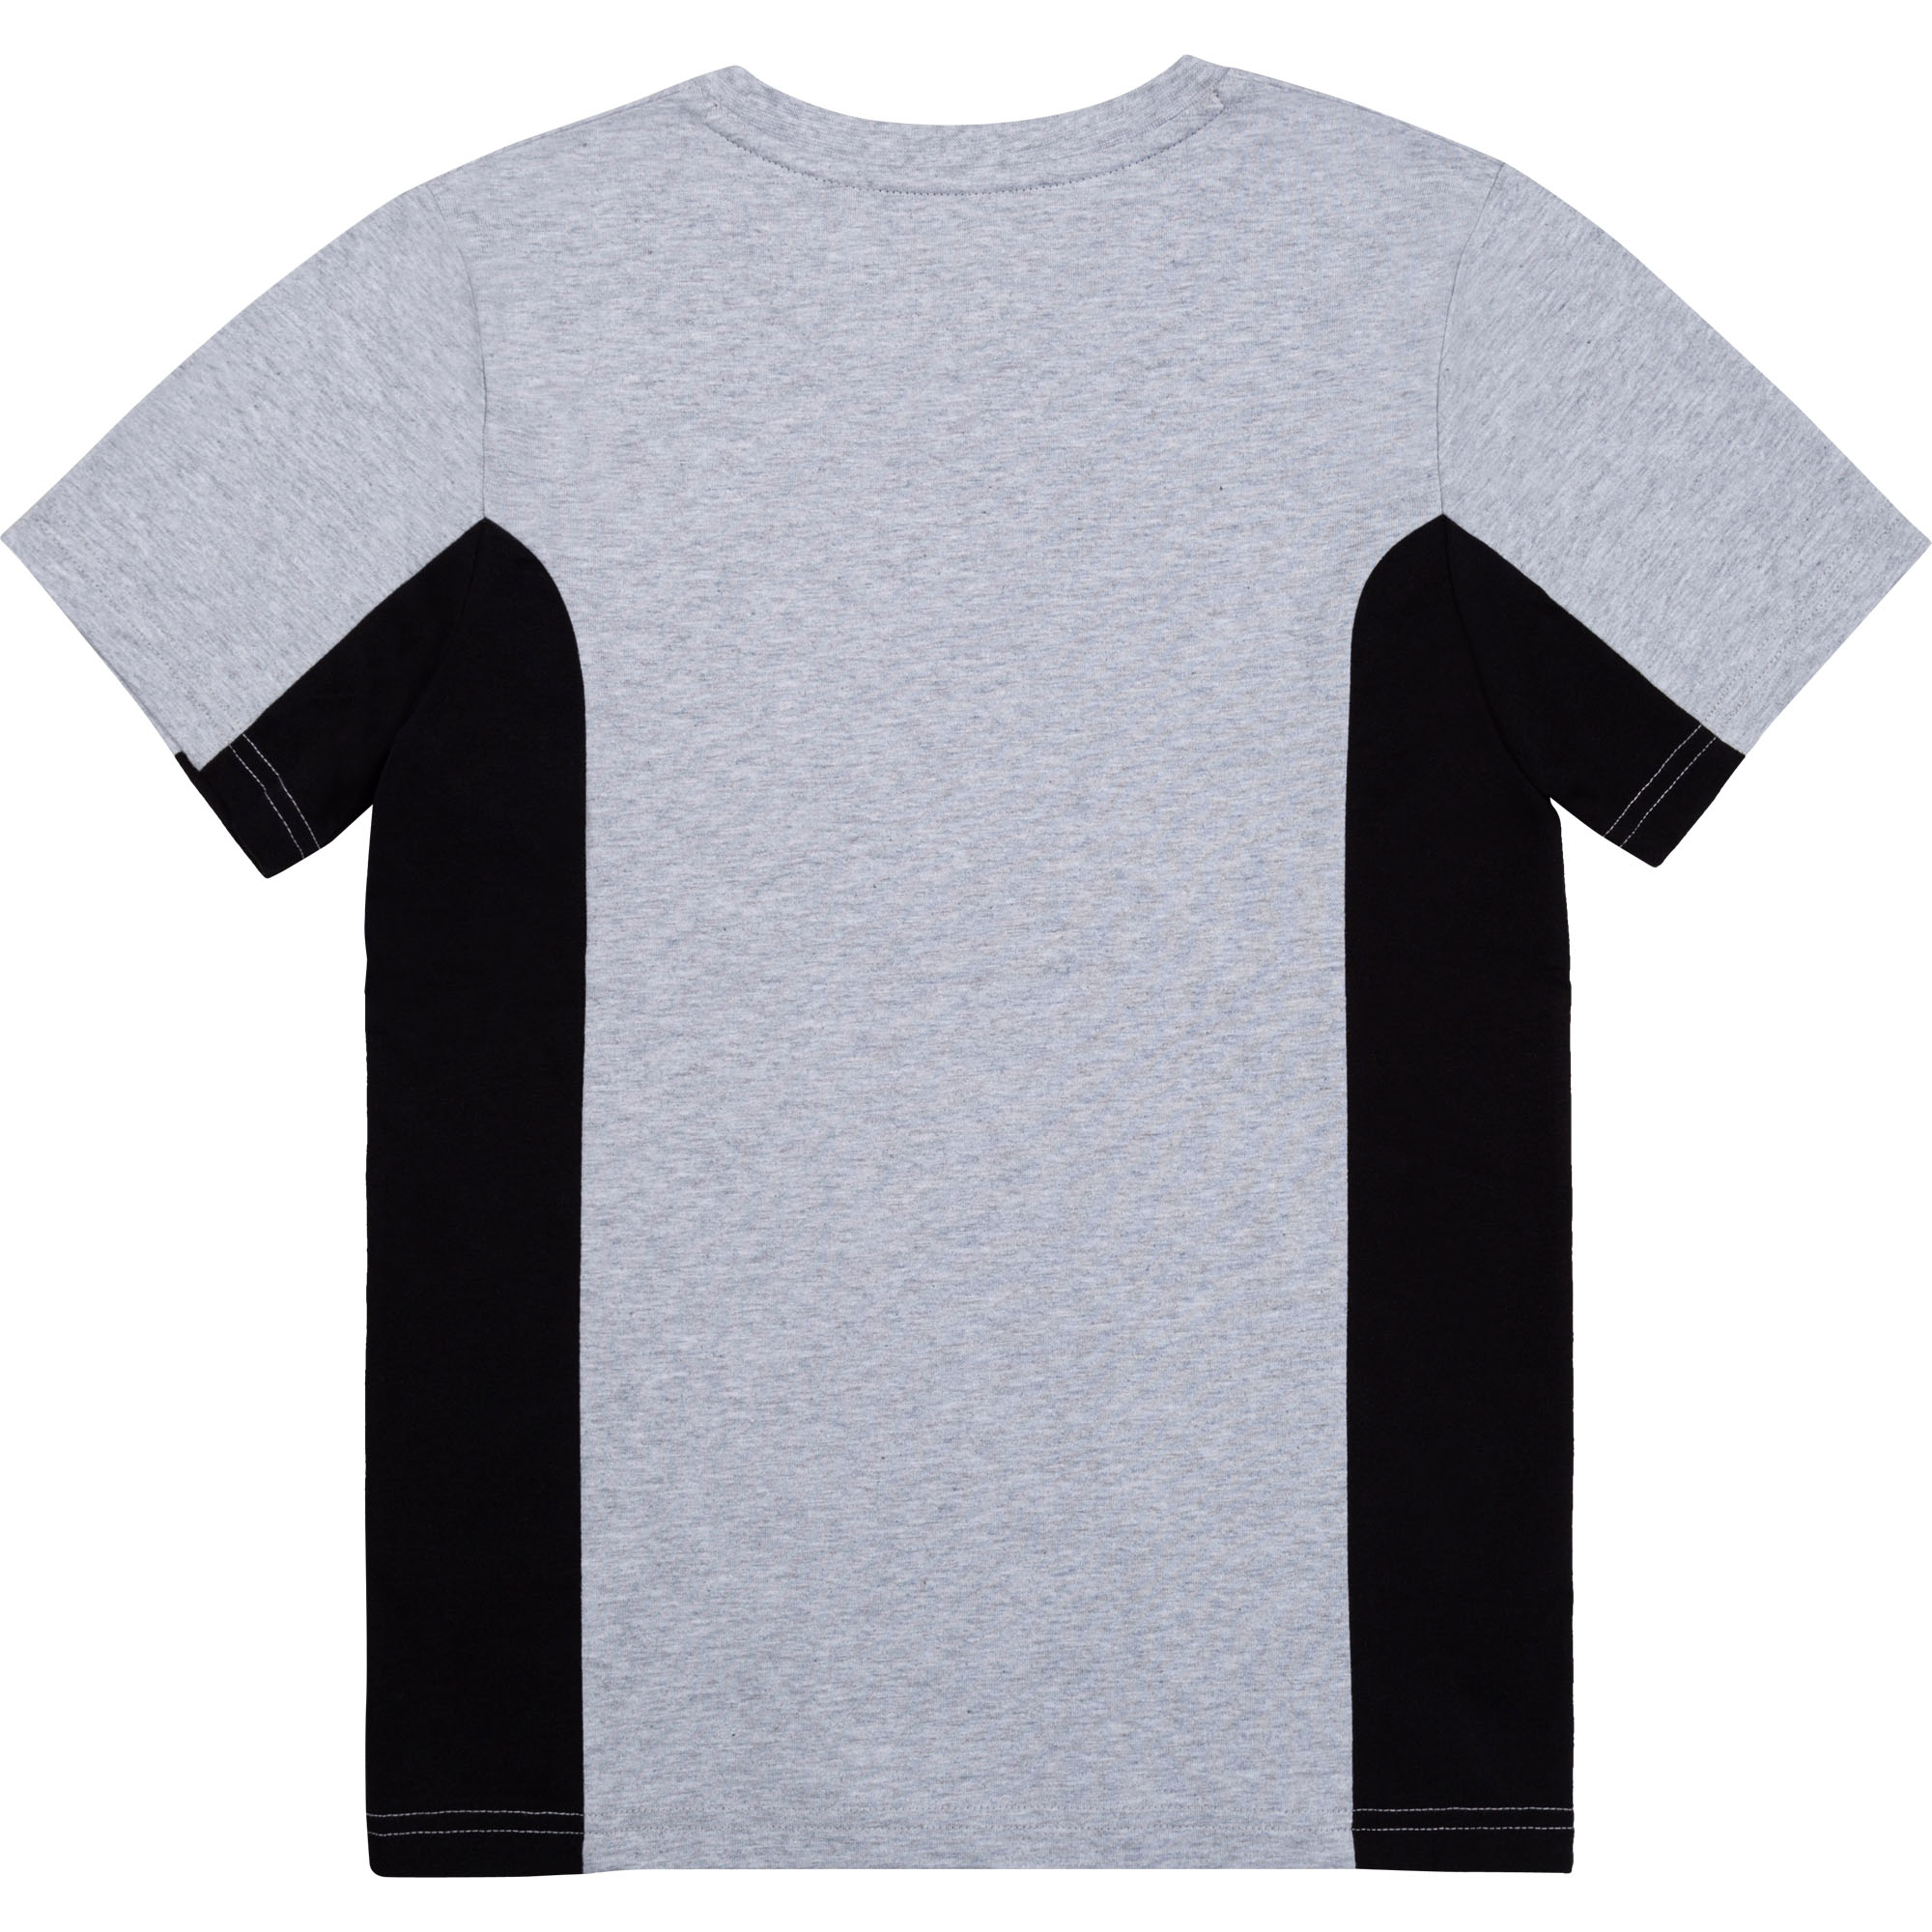 Zweifarbiges Baumwoll-Shirt TIMBERLAND Für JUNGE